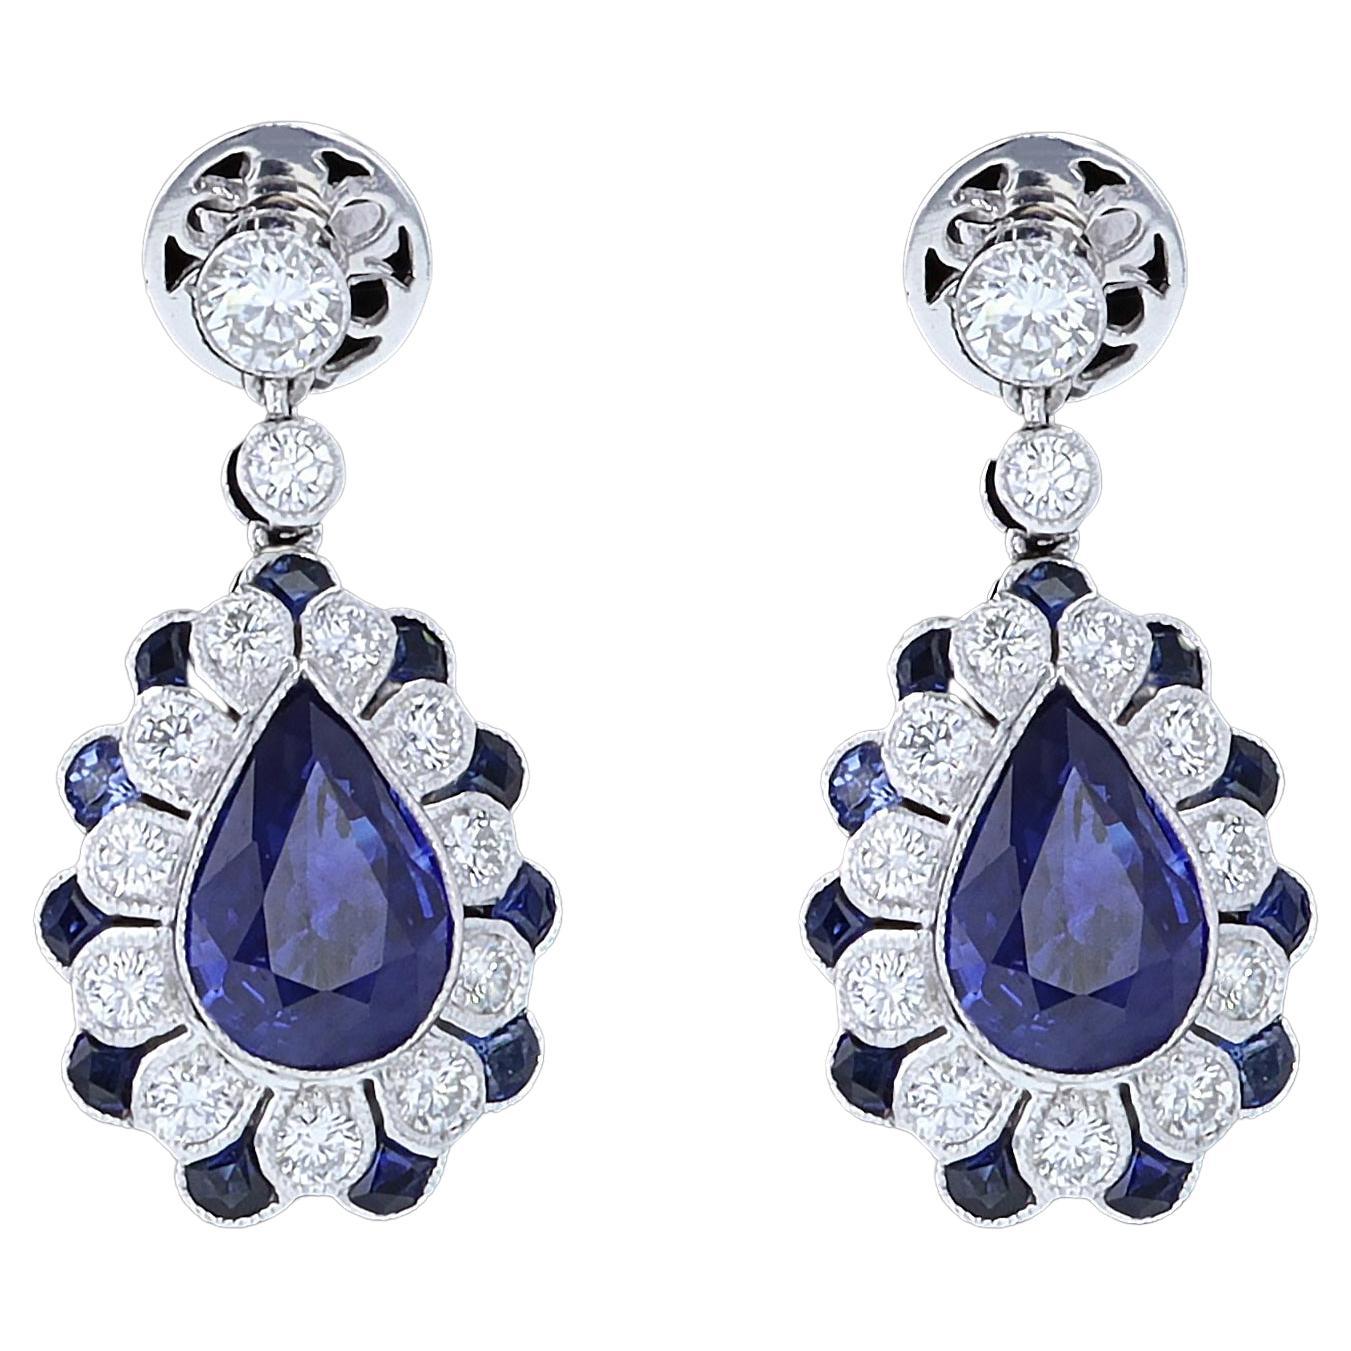 Atemberaubende Platin-Ohrringe mit Saphiren und Diamanten